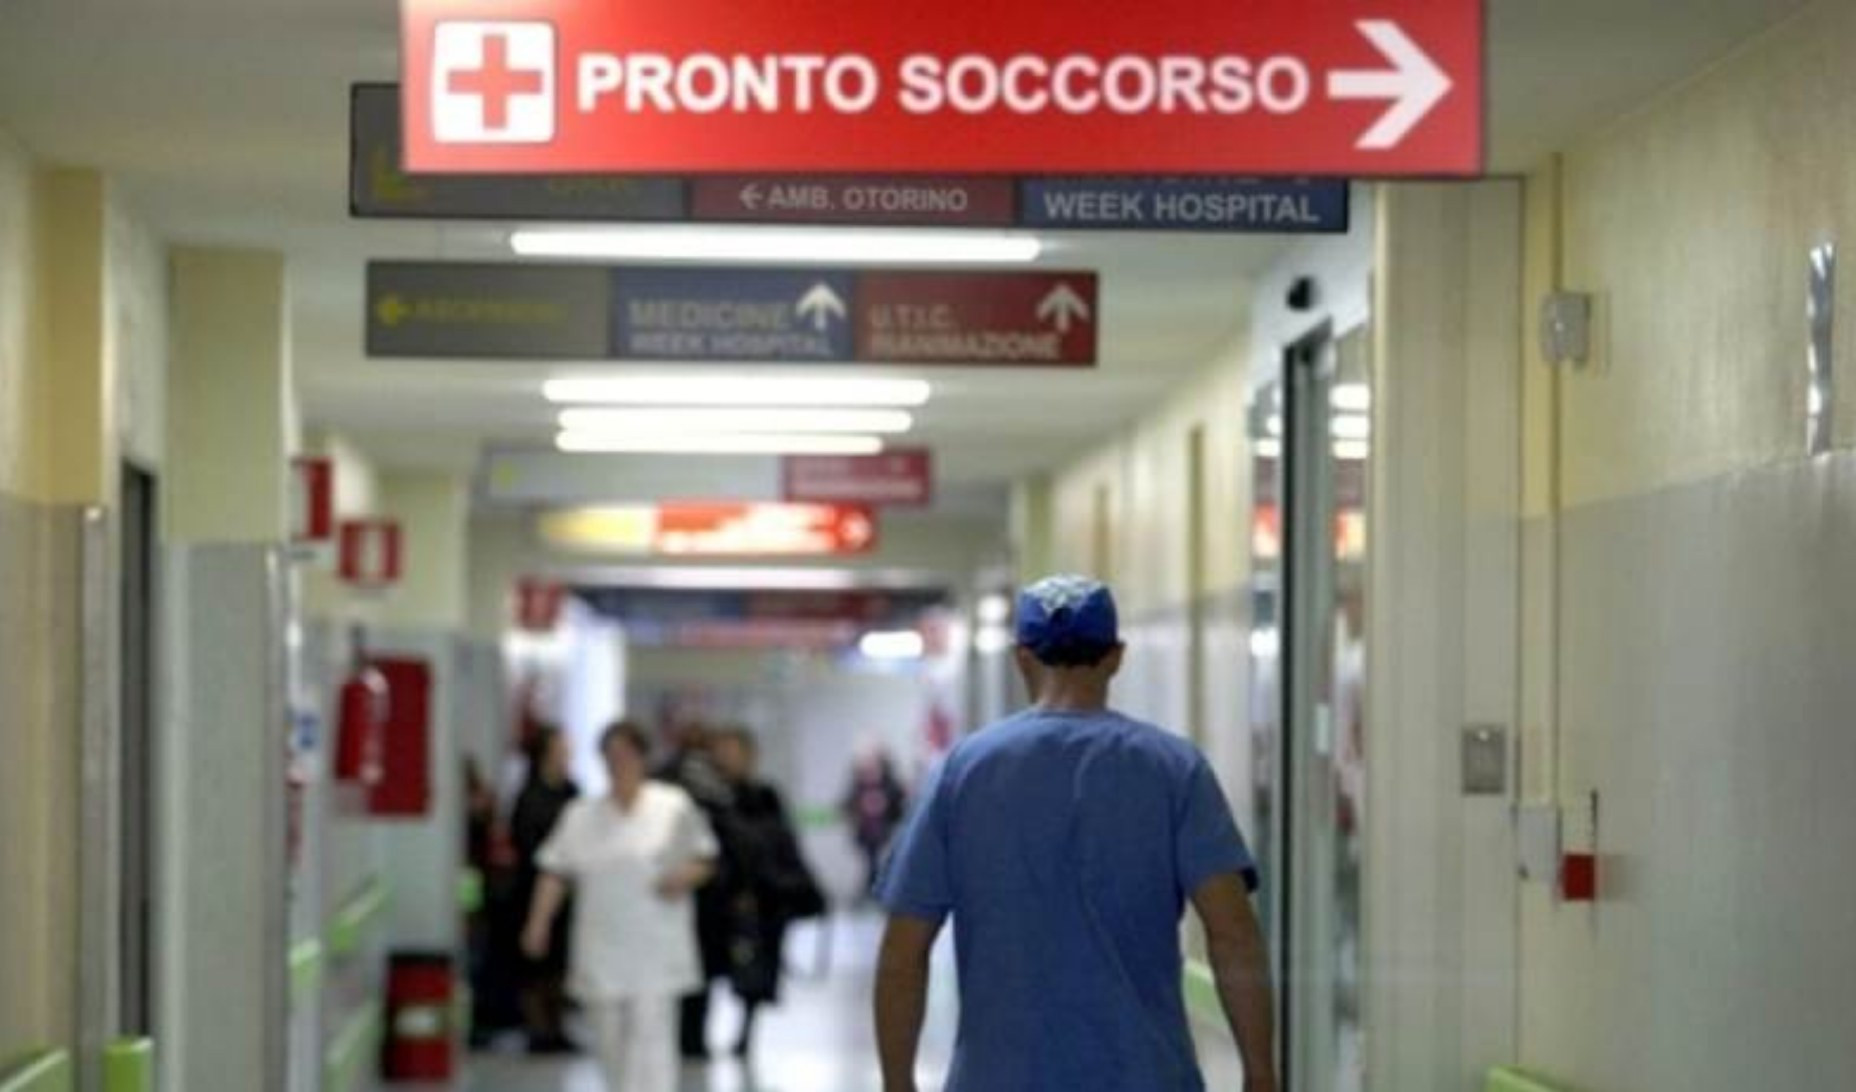 Sanità in Liguria, Asl5: dagli ospedali al territorio - l'integrale